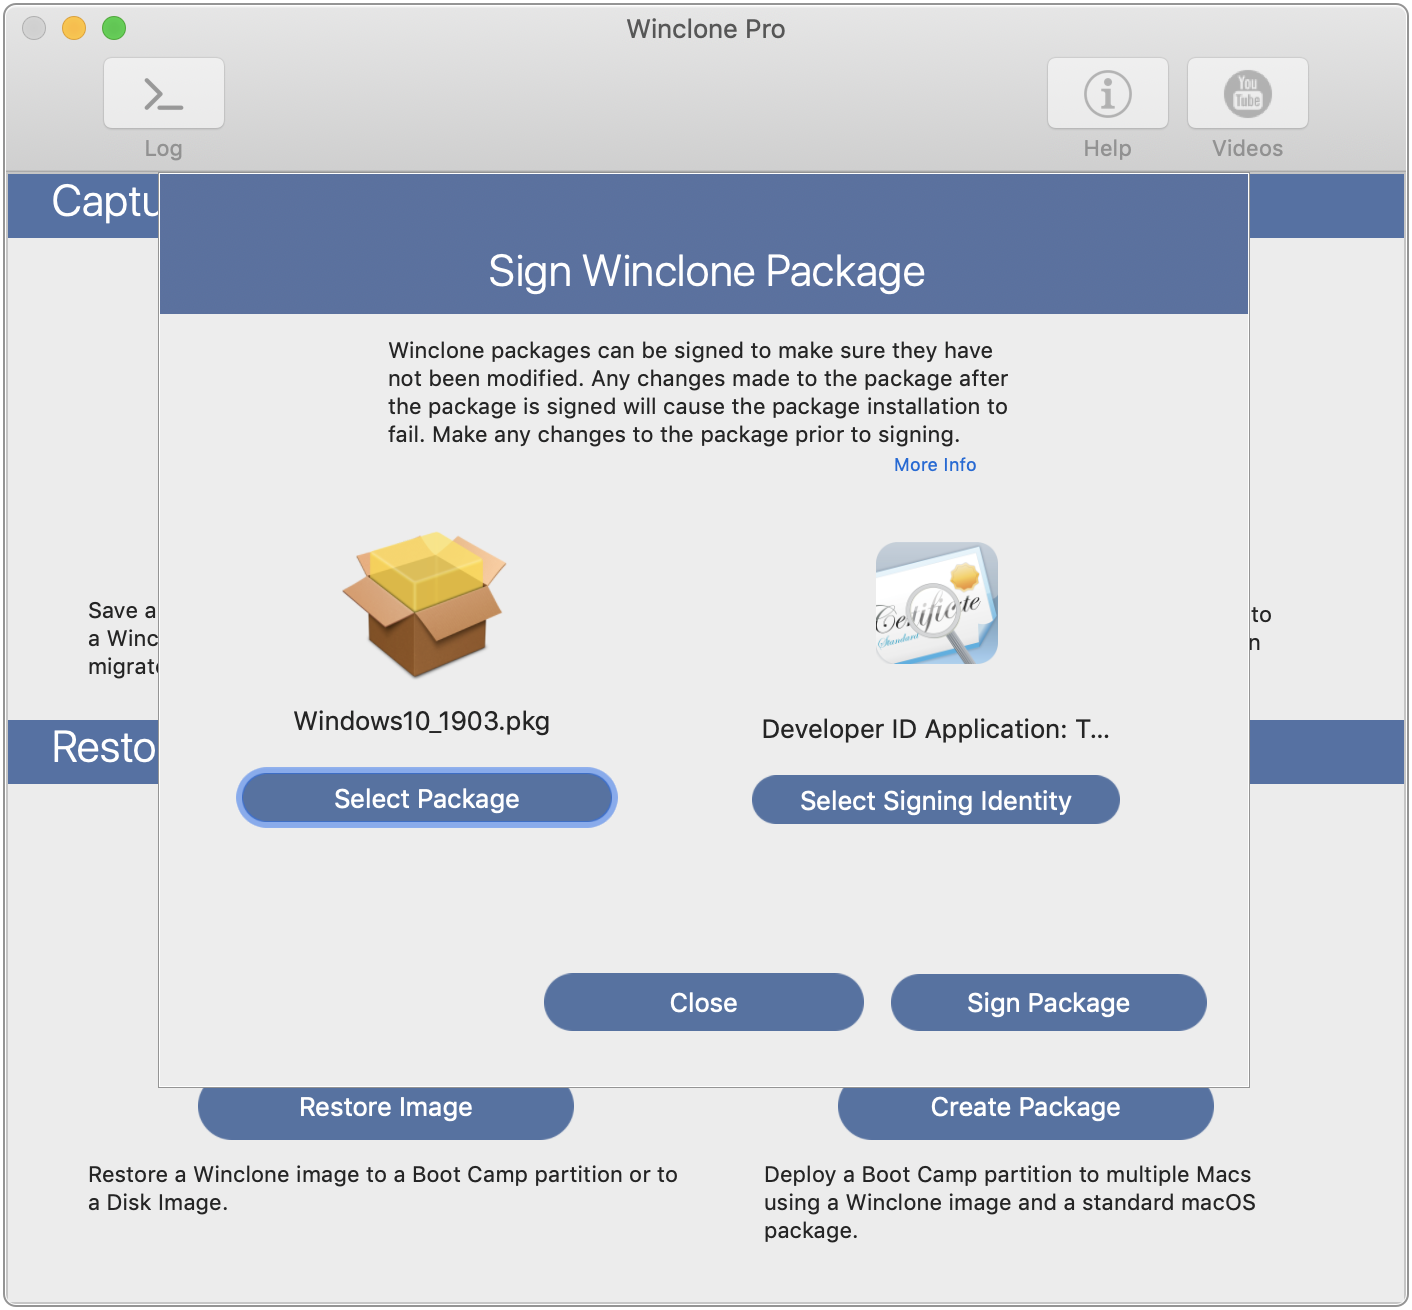 Winclone Pro 7.2.1 download